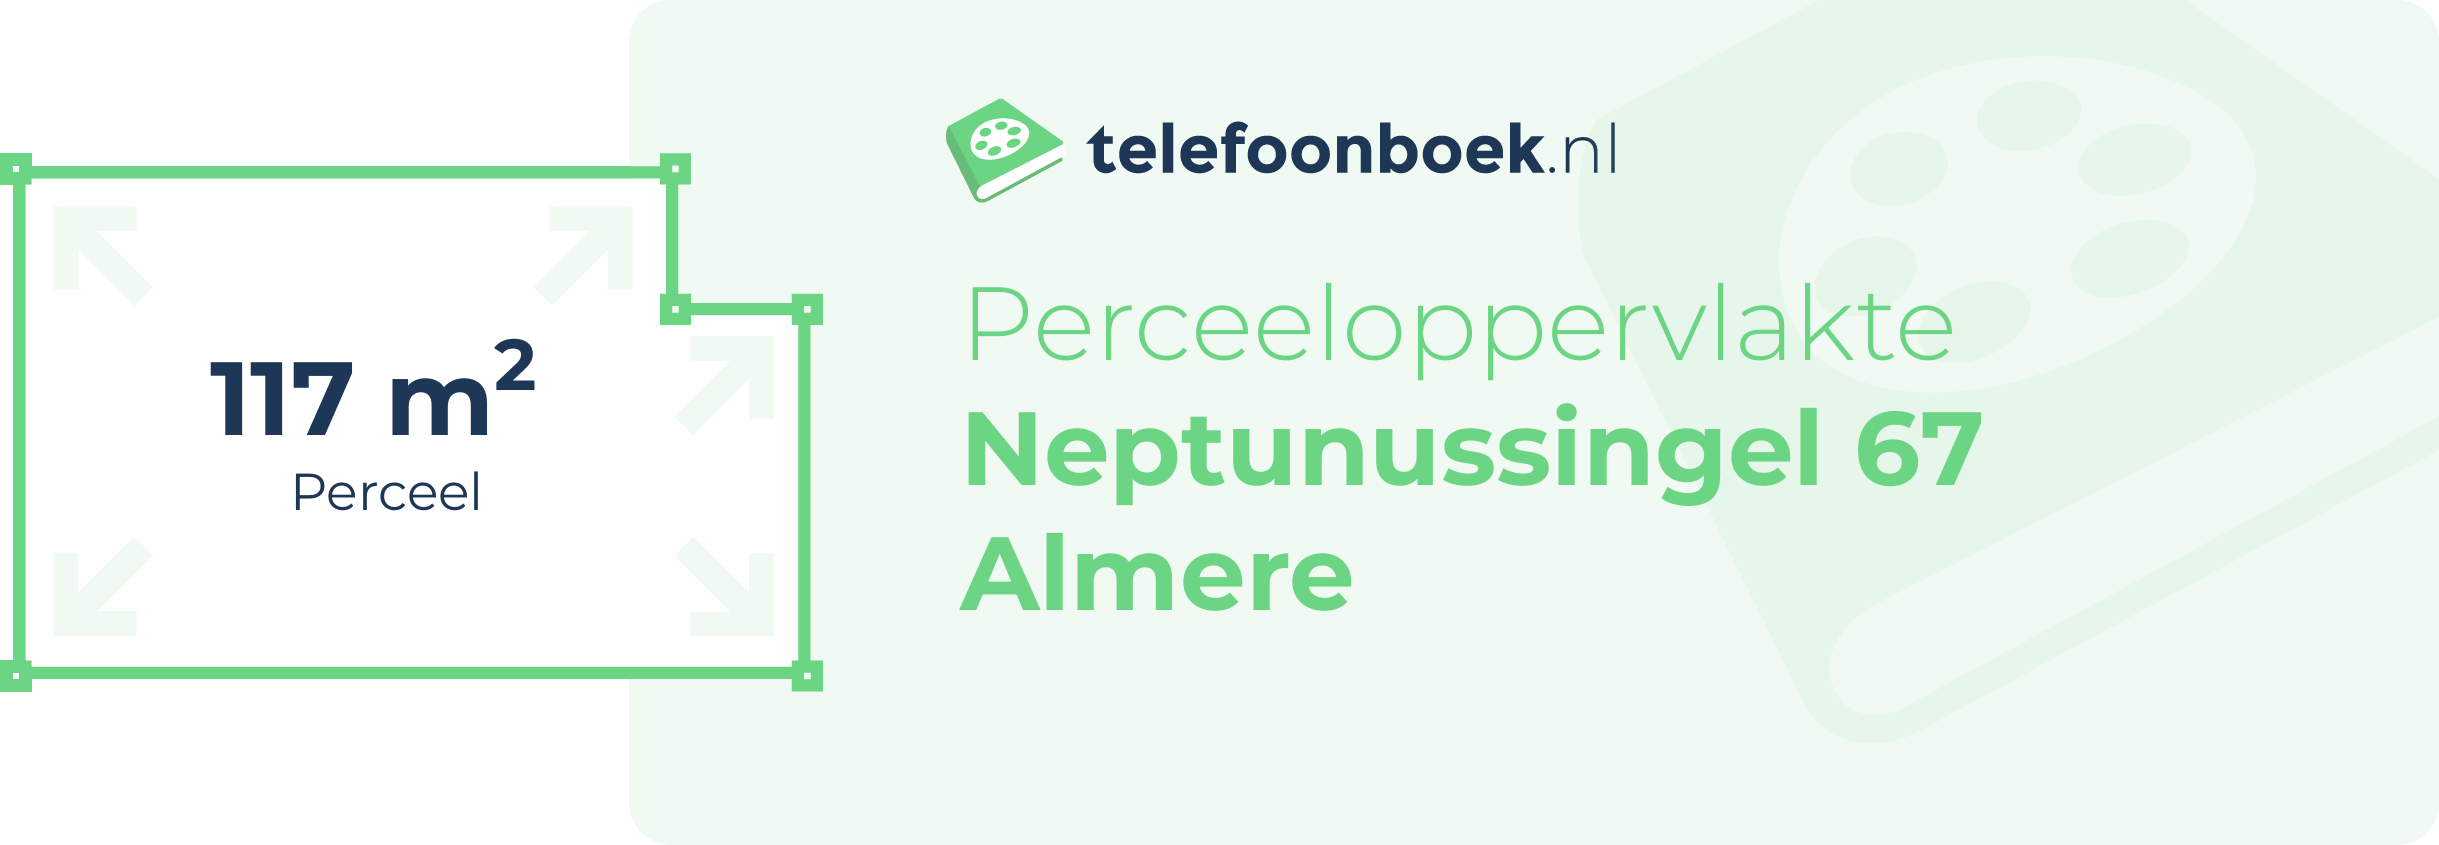 Perceeloppervlakte Neptunussingel 67 Almere